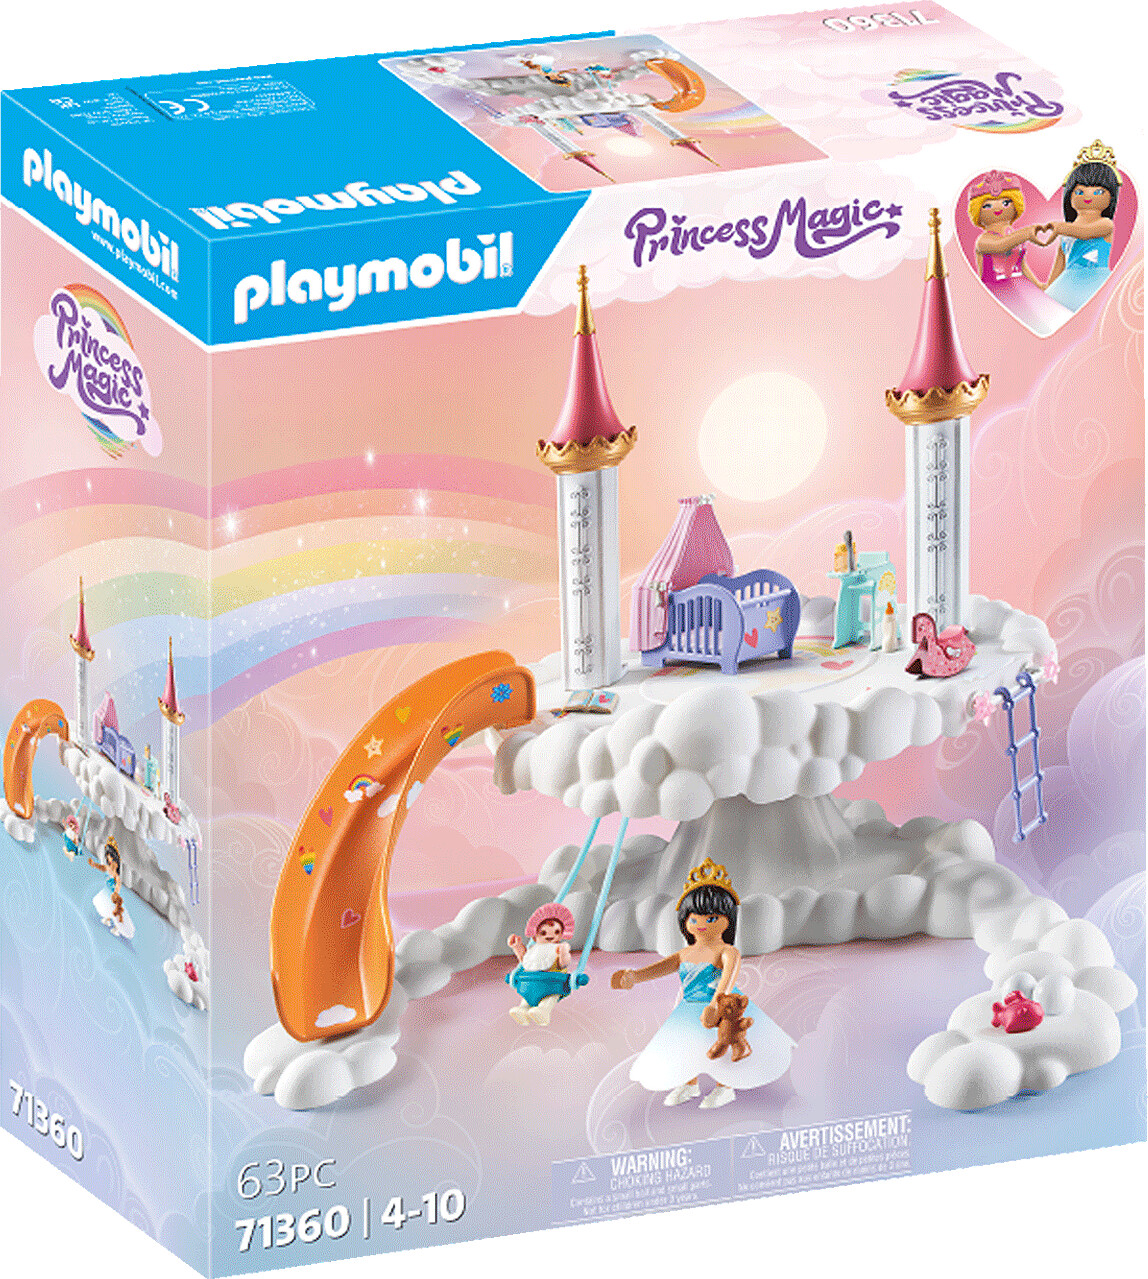 Billede af Playmobil Princess Magic - Himmelsk Babysky - 71360 hos Gucca.dk